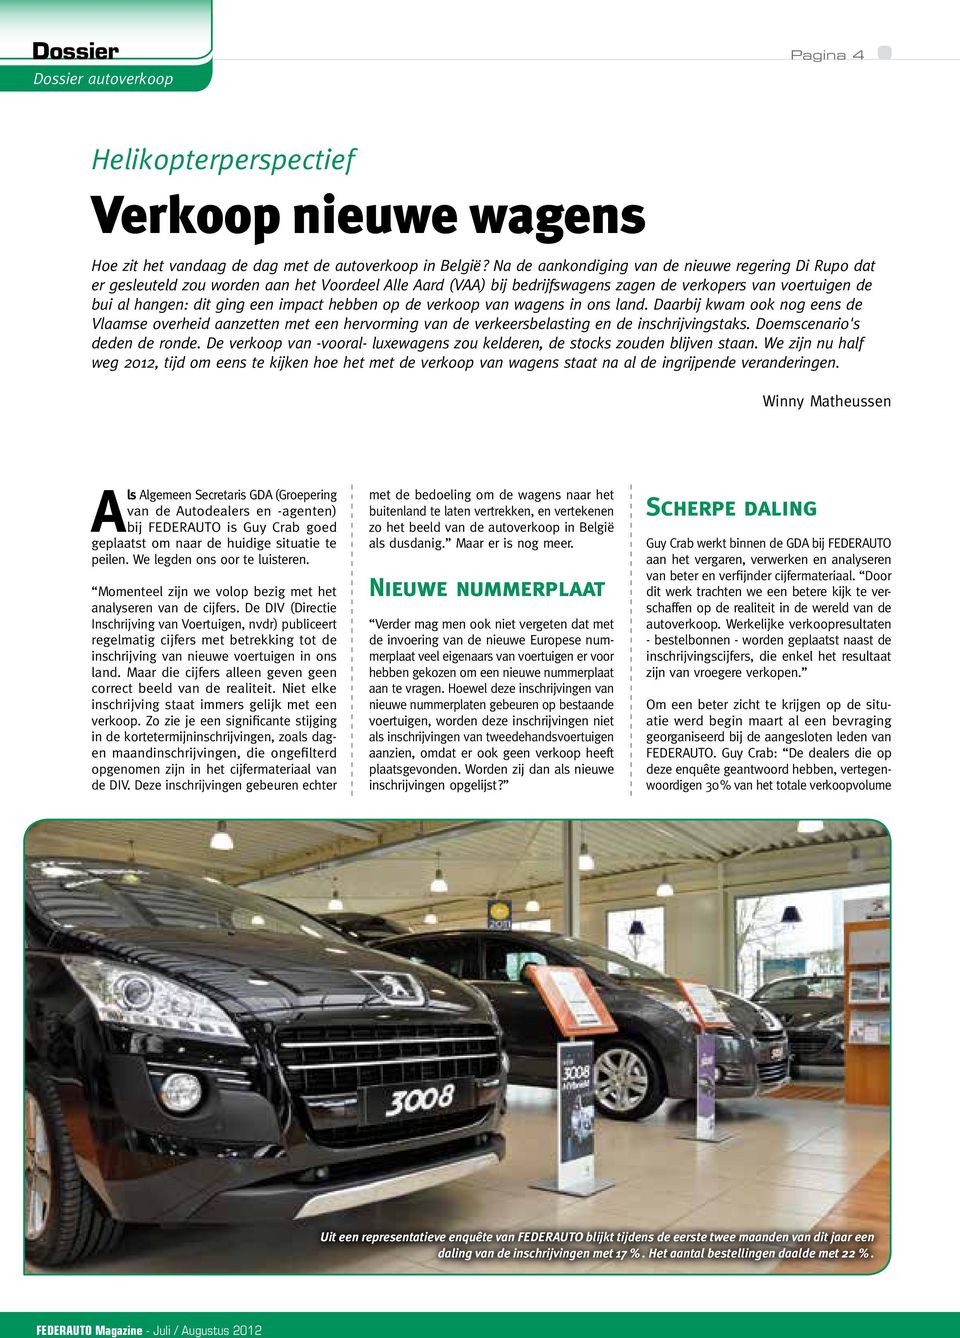 impact hebben op de verkoop van wagens in ons land. Daarbij kwam ook nog eens de Vlaamse overheid aanzetten met een hervorming van de verkeersbelasting en de inschrijvingstaks.